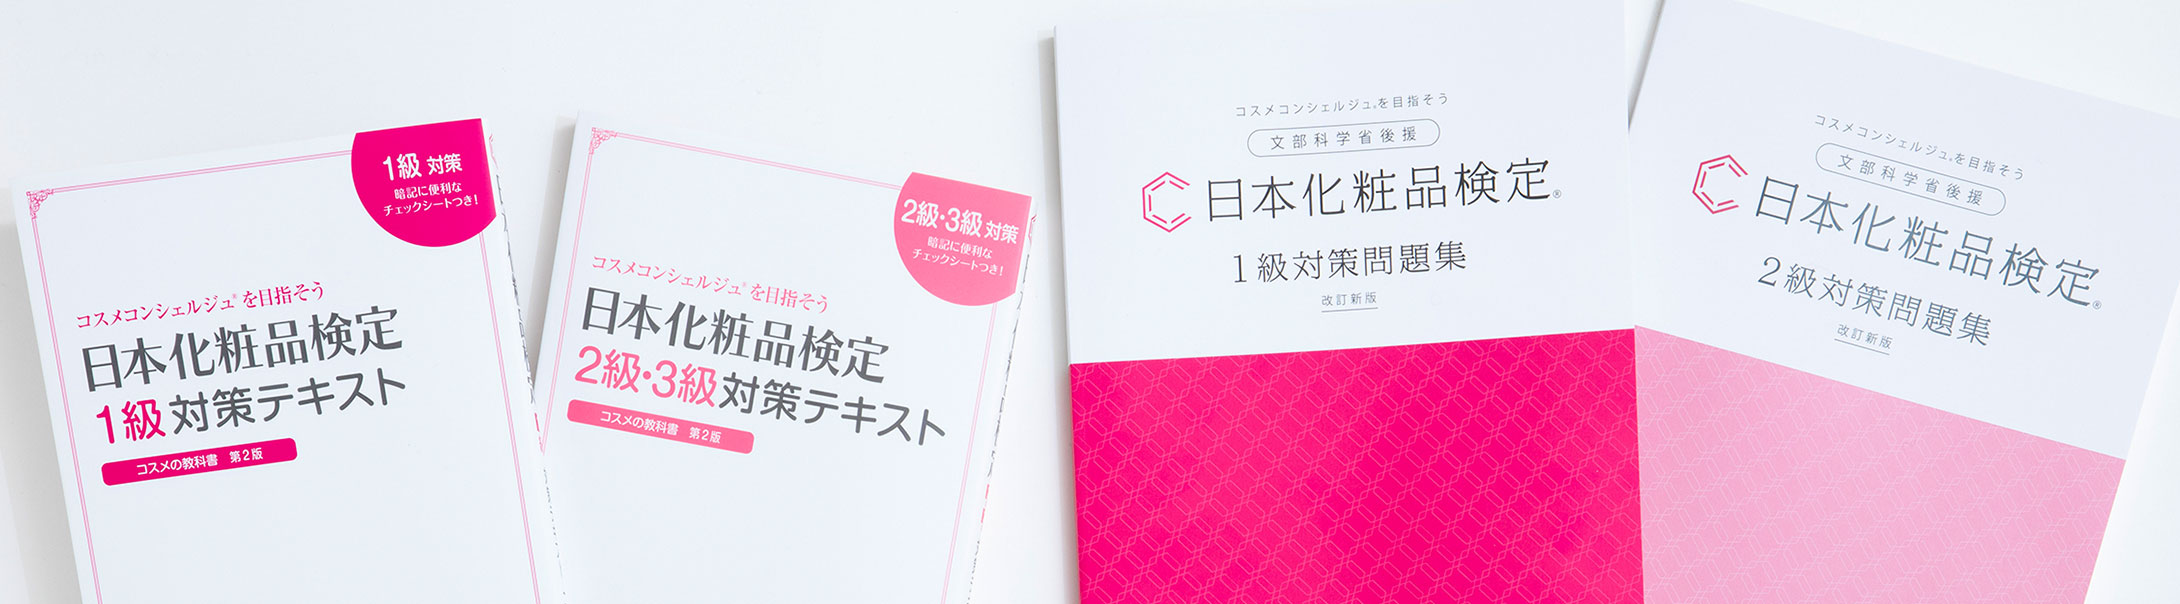 書籍の内容訂正・変更について | 日本化粧品検定